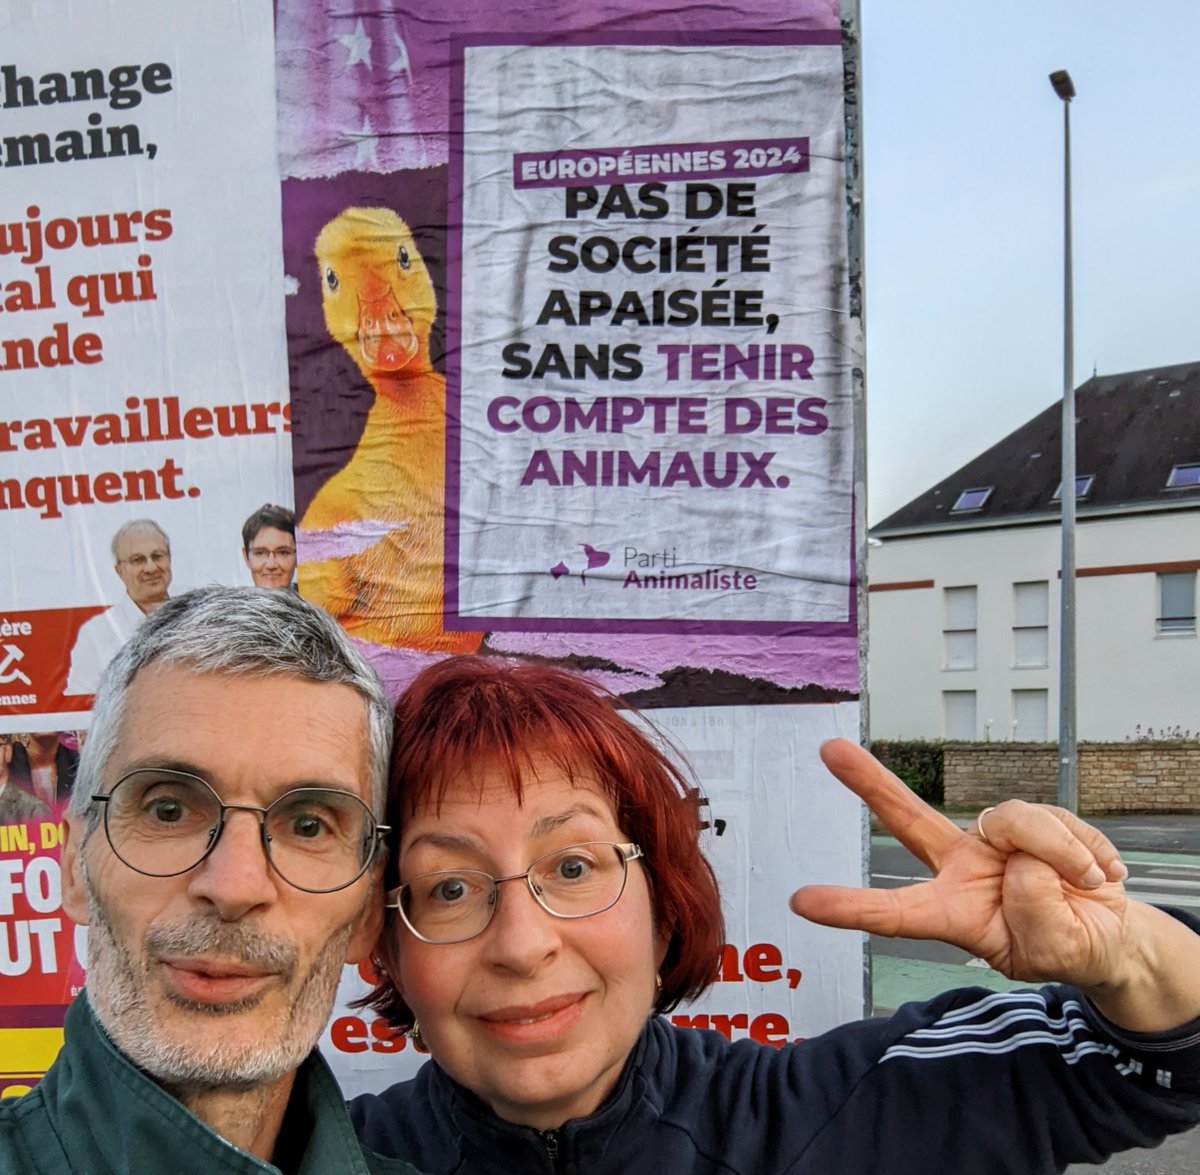 Ce soir collage d'affiches à Pornichet (Loire Atlantique) en famille avec notre mascotte Saturnin du @PartiAnimaliste 
Le 9 juin le seul vote utile pour les animaux, c'est le vote pour le #PartiAnimaliste 
#Europeennes2024 
#OnRecolteCeQueLonVote 
#PasDeuropeSansLesAnimaux